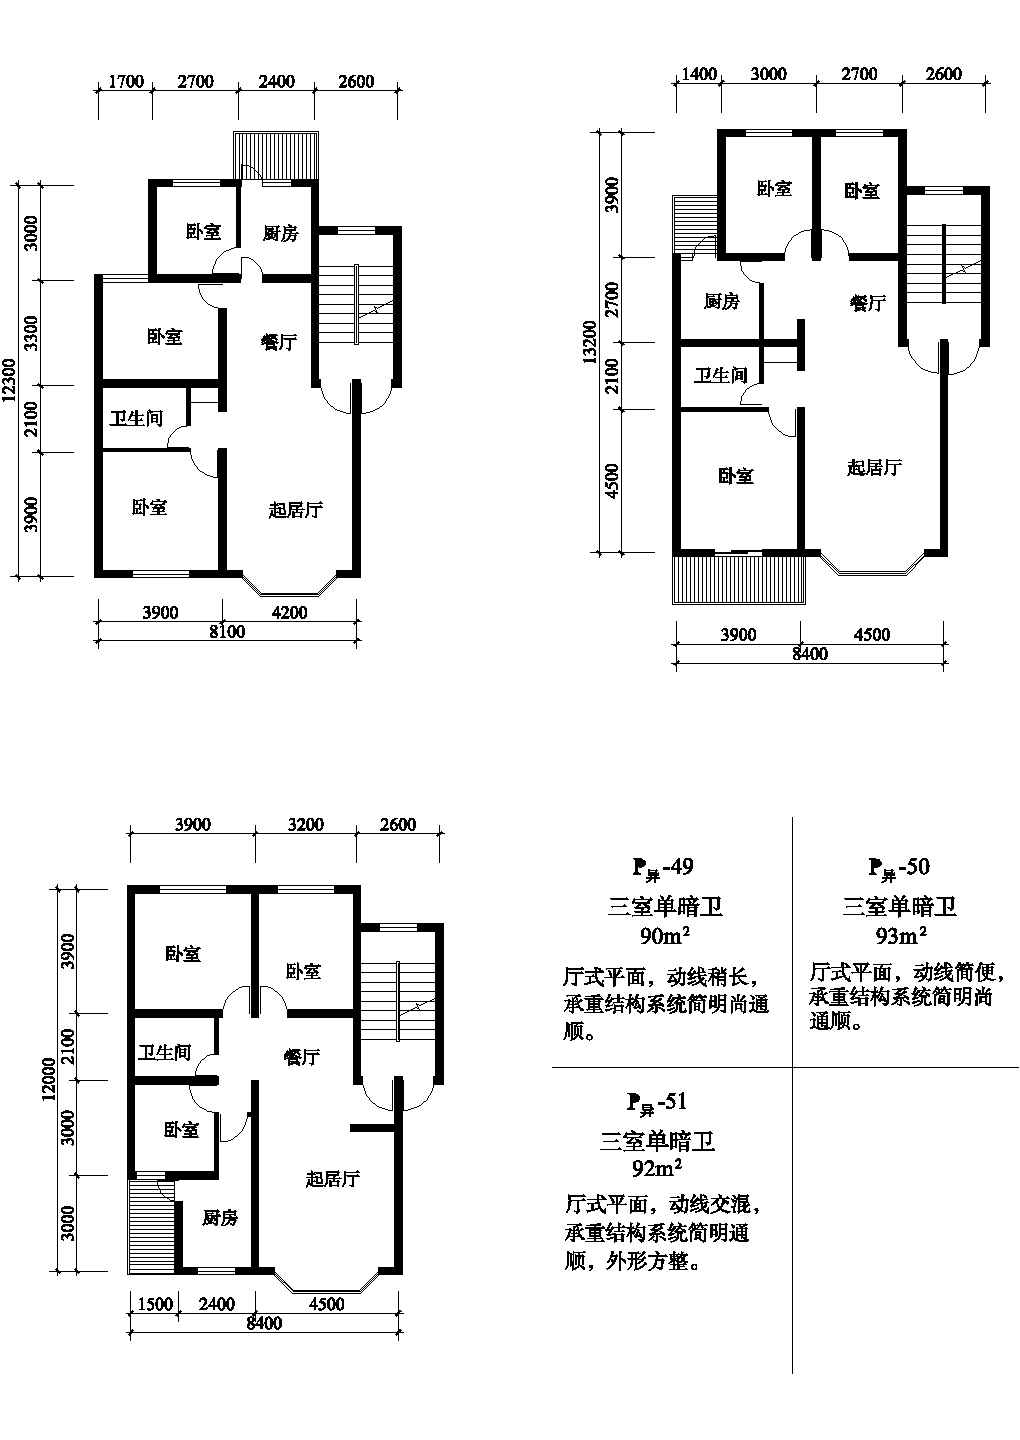 三室92/90/93平方单元式住宅户型平面图纸